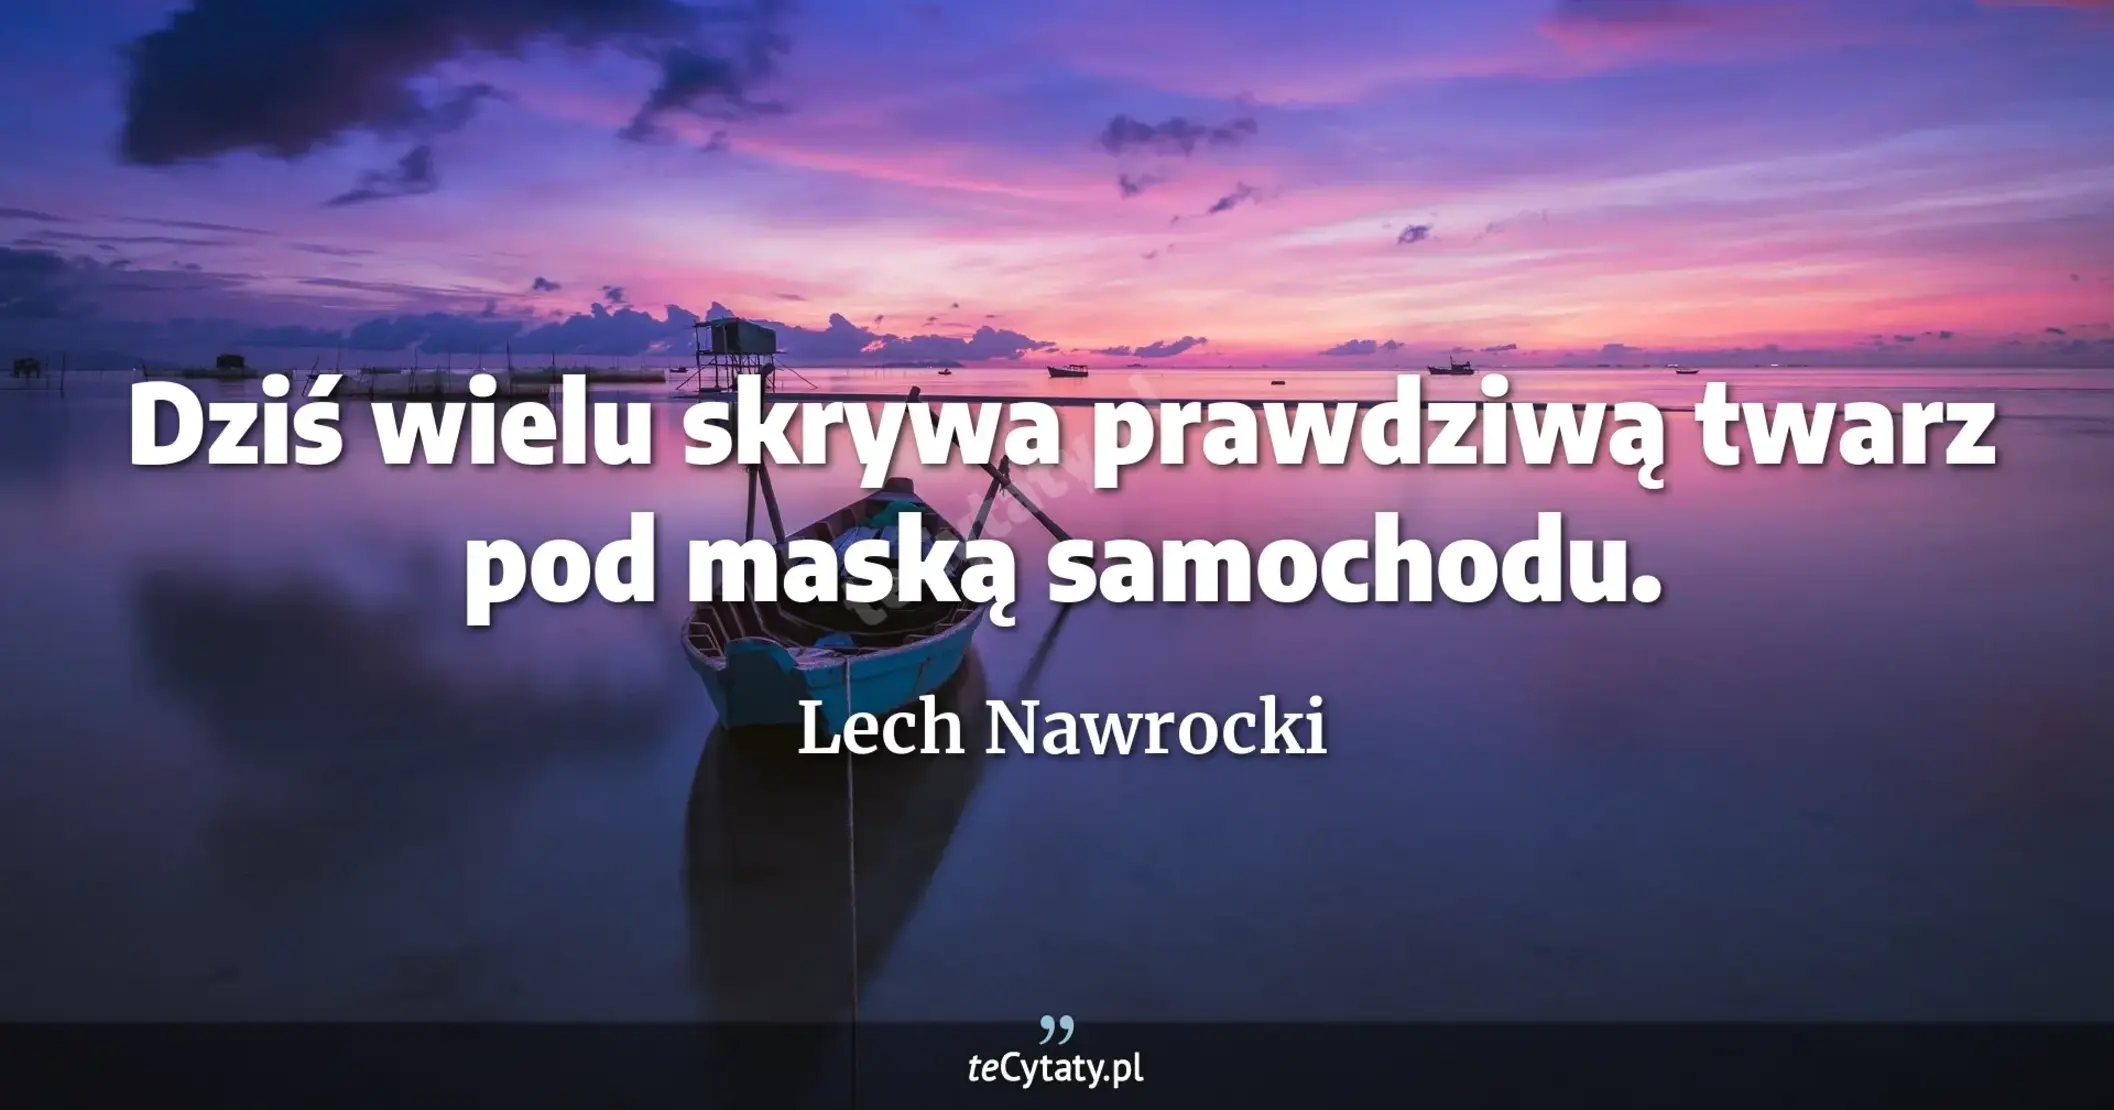 Dziś wielu skrywa prawdziwą twarz pod maską samochodu. - Lech Nawrocki